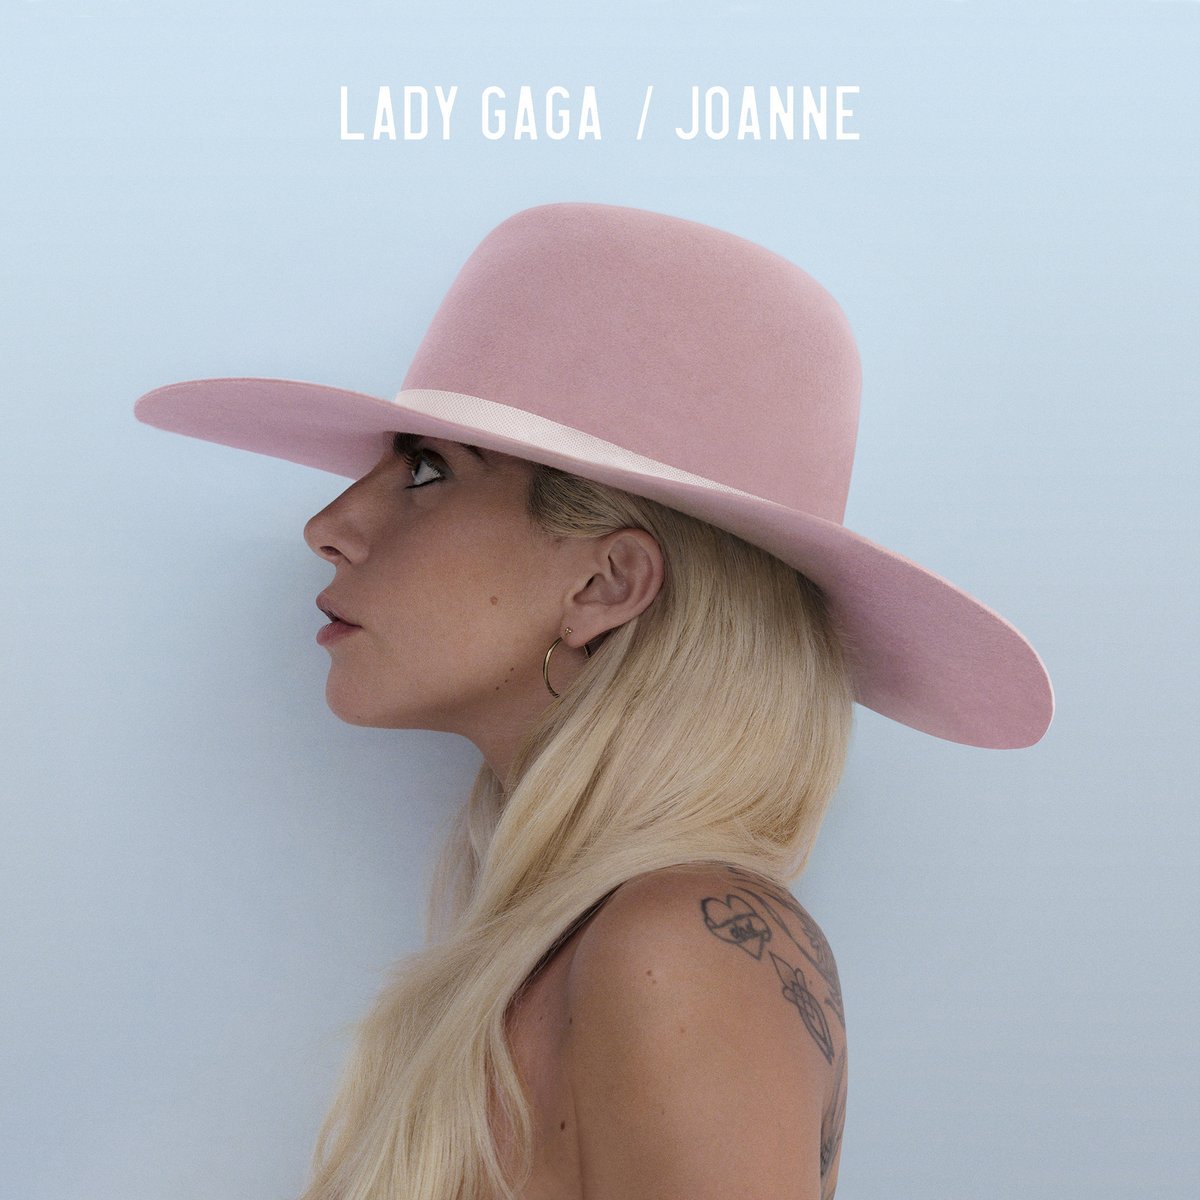 Album of the Week: Lady Gaga's 'Joanne'